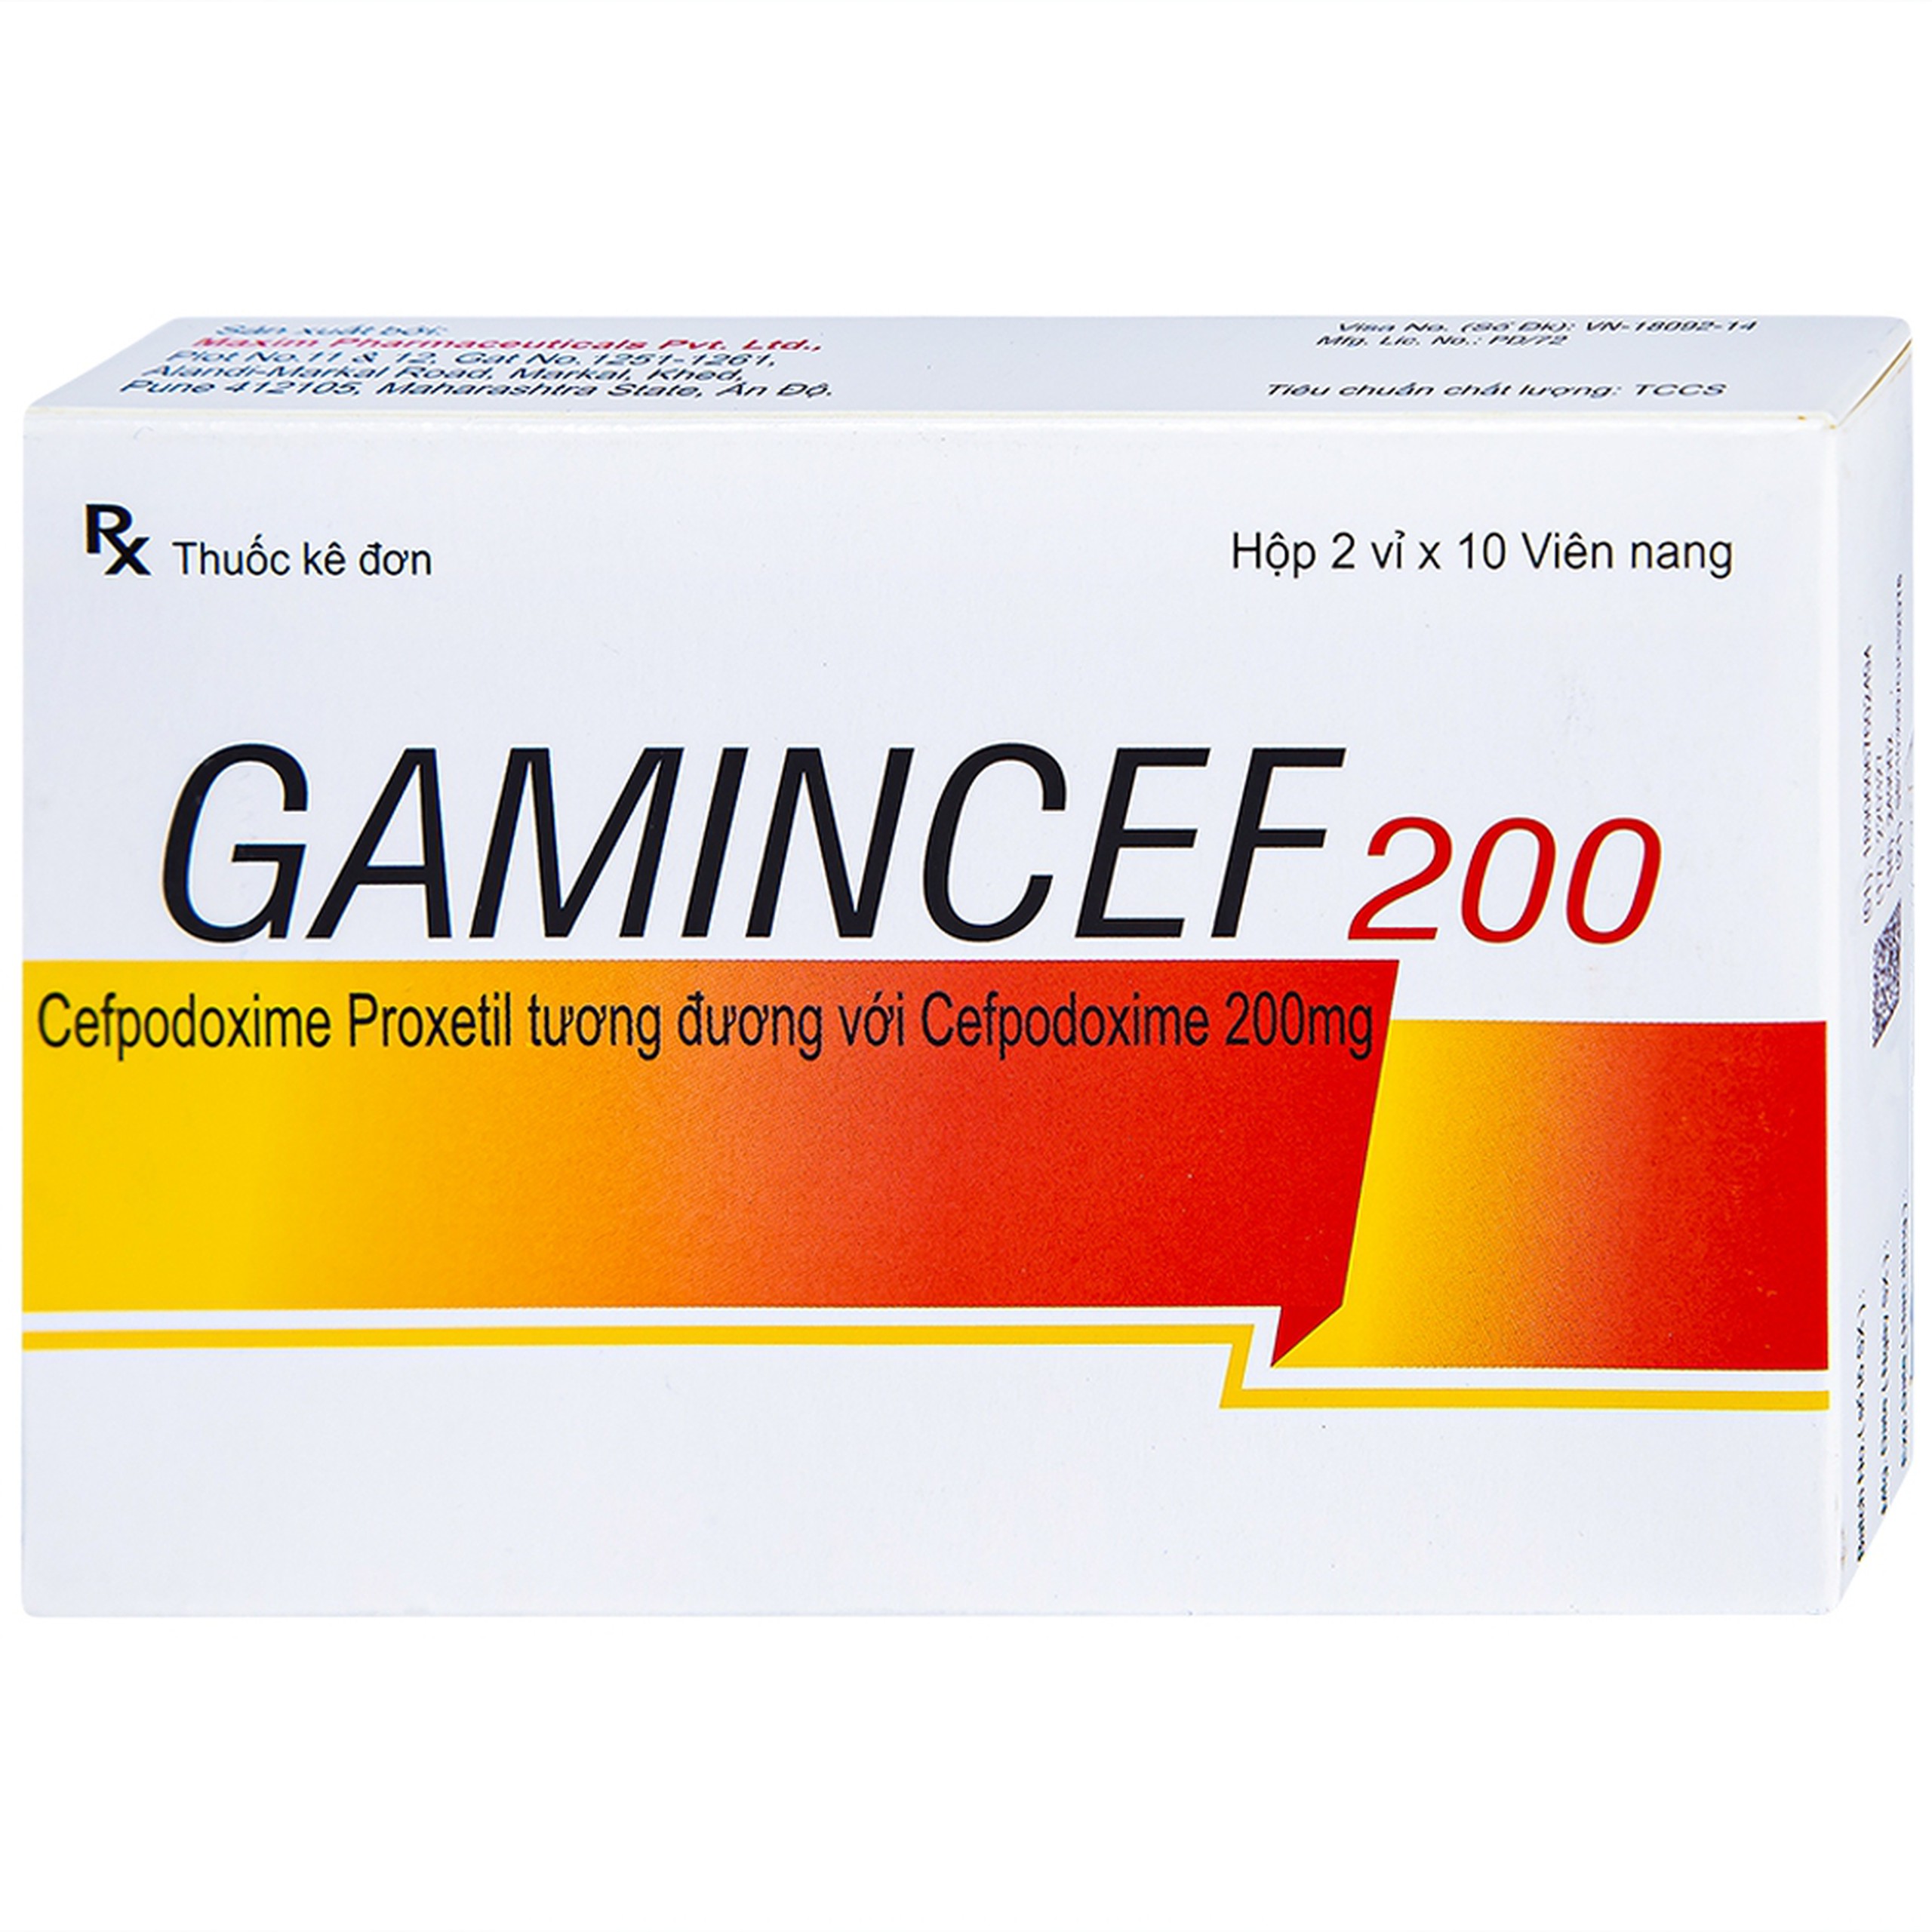 Thuốc Gamincef 200 Maxim điều trị viêm phổi, viêm phế quản, viêm họng (2 vỉ x 10 viên)